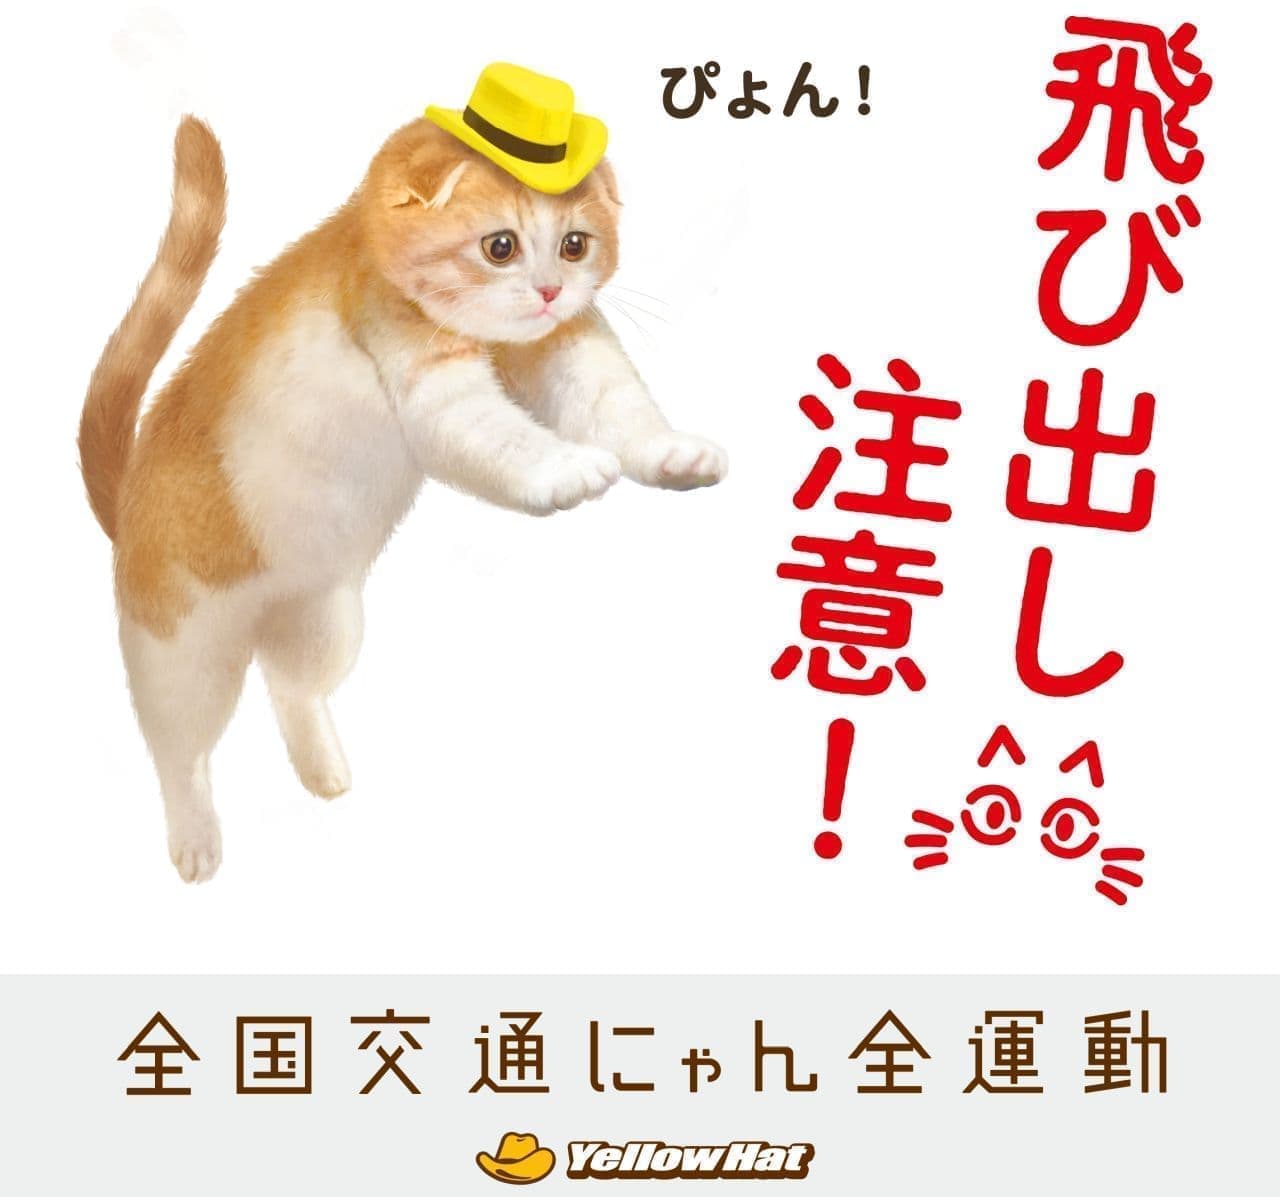 「猫飛び出しサイン」を渋谷“キャット”ストリートの学校に設置！猫の安全を守るイエローハットの全国交通にゃん全運動キャンペーン